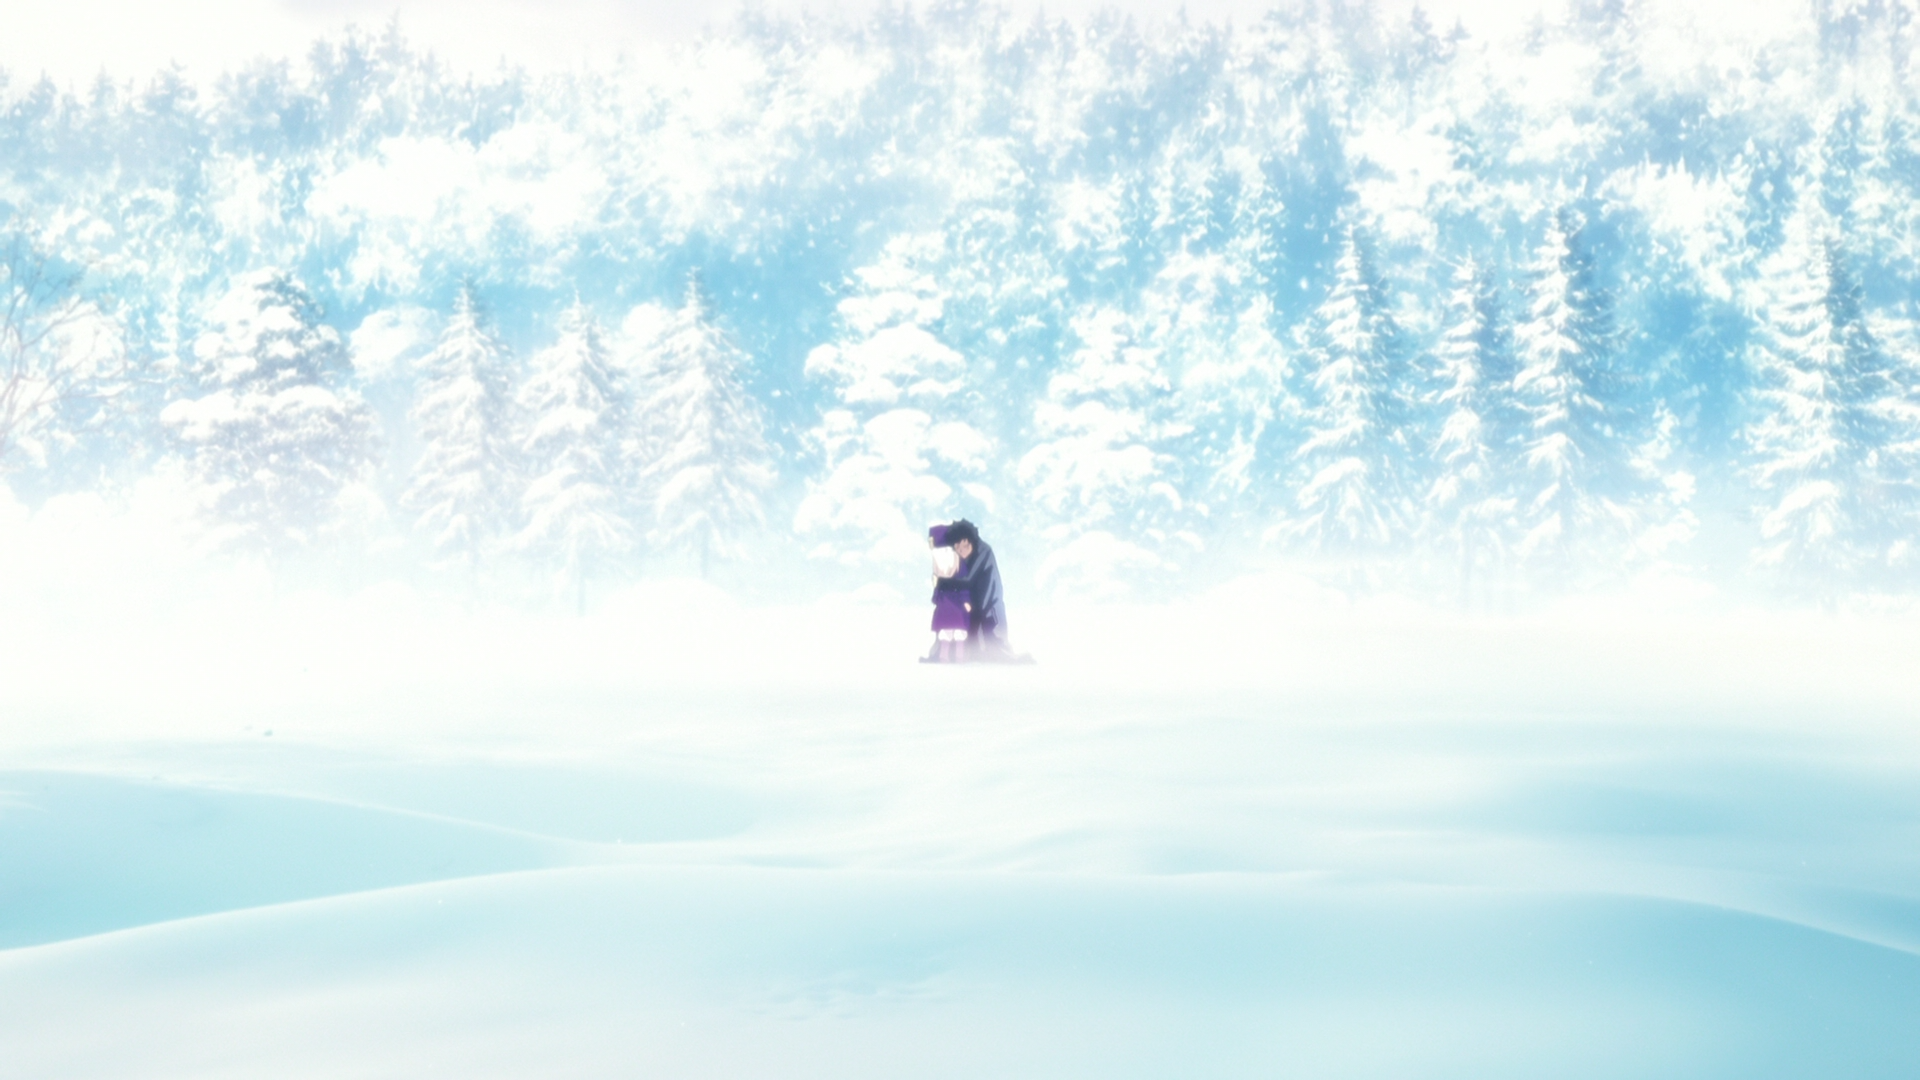 Fate Zero Anime Fate Series Kiritsugu Emiya Illyasviel Von Einzbern Winter Snow Trees 1920x1080